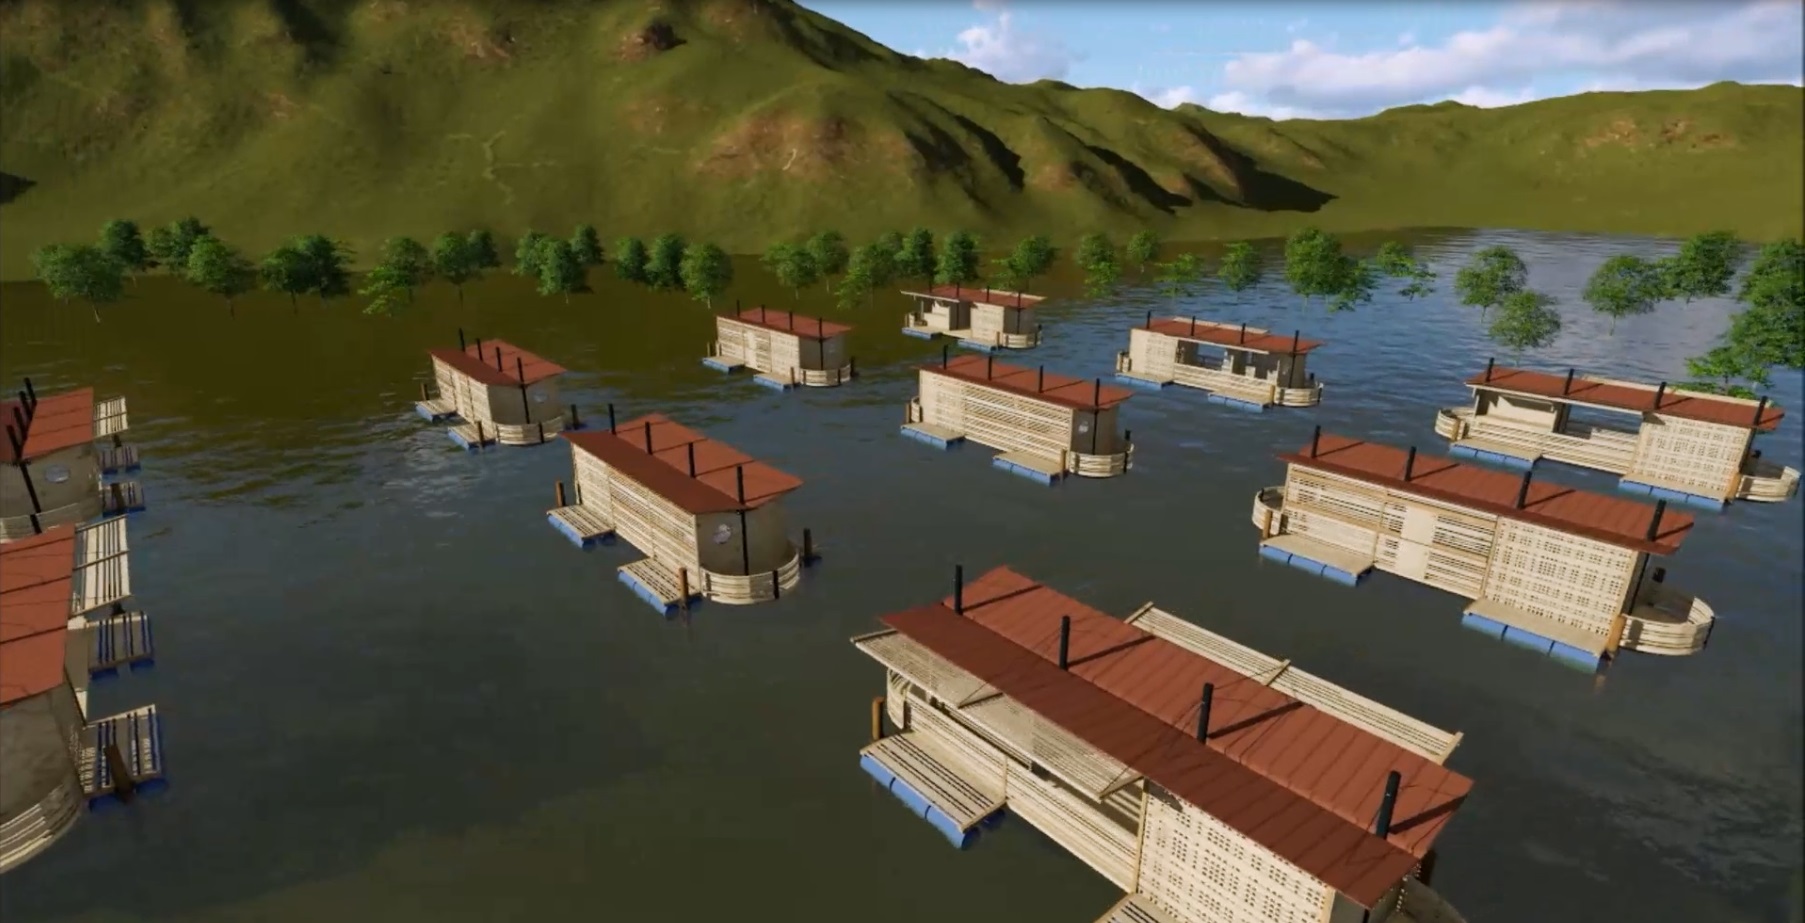 Casas que flotan para enfrentar inundaciones